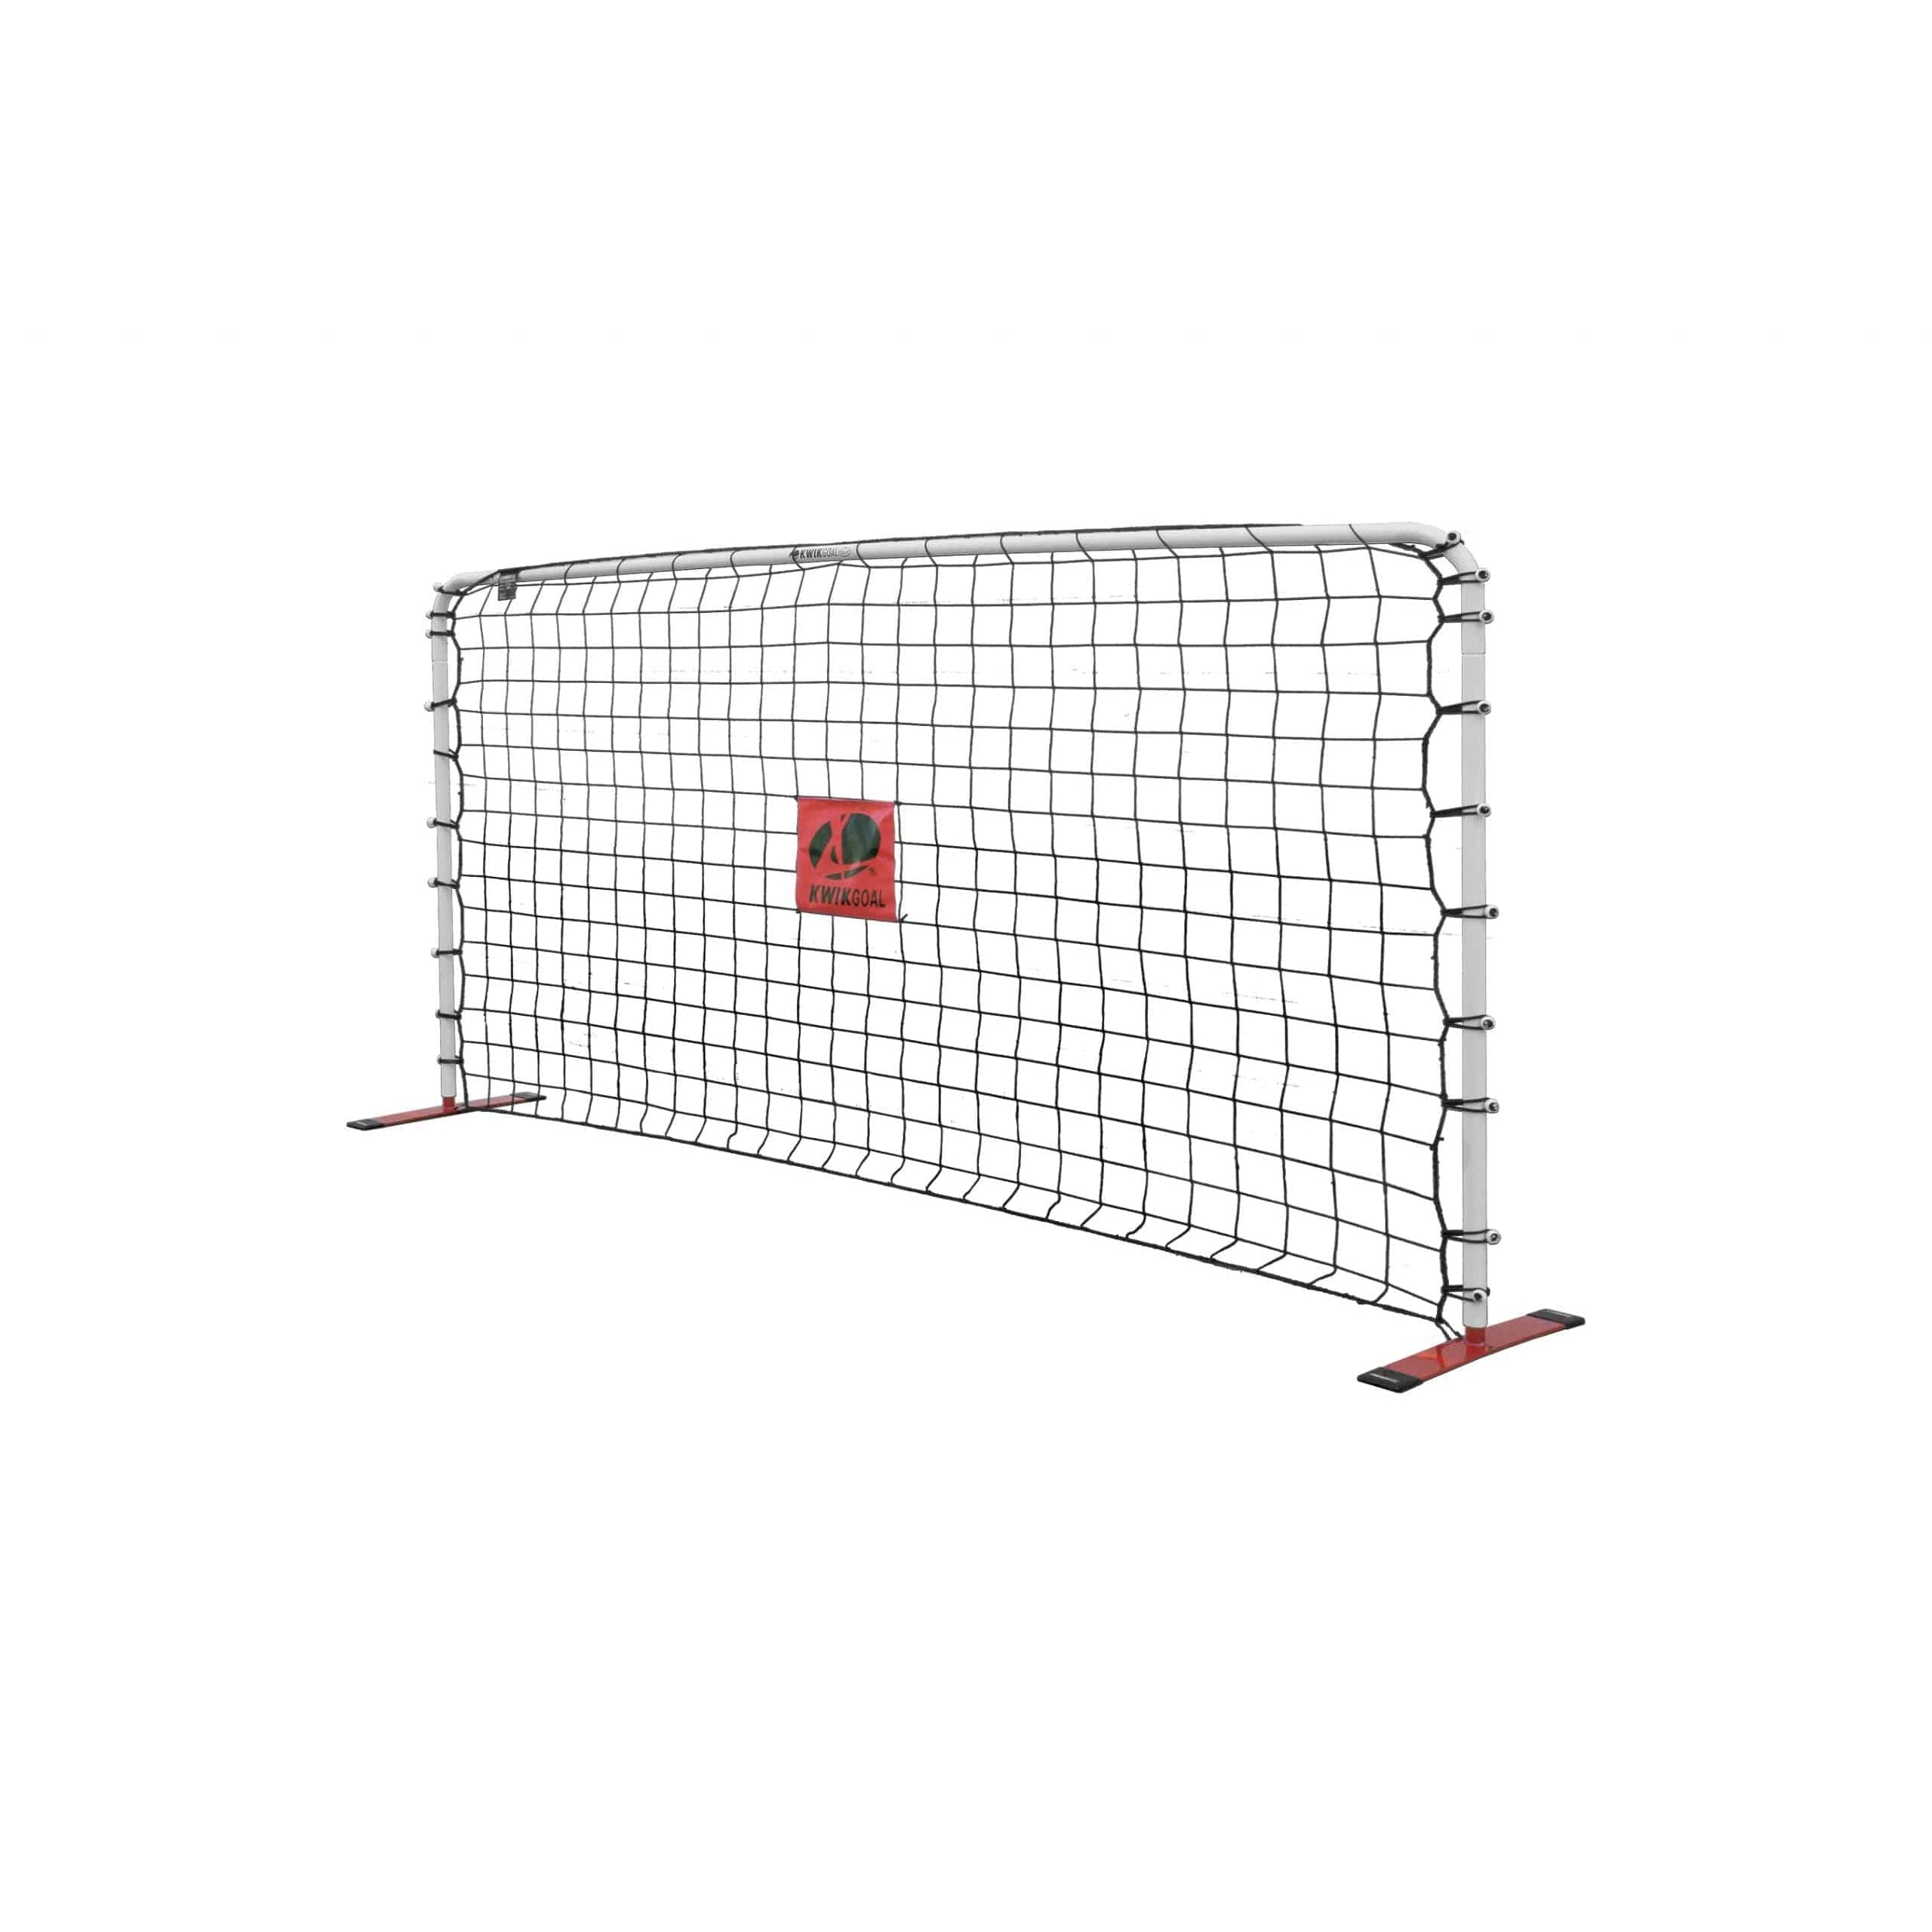 Kwik Goal Rebounder Replacement Nets